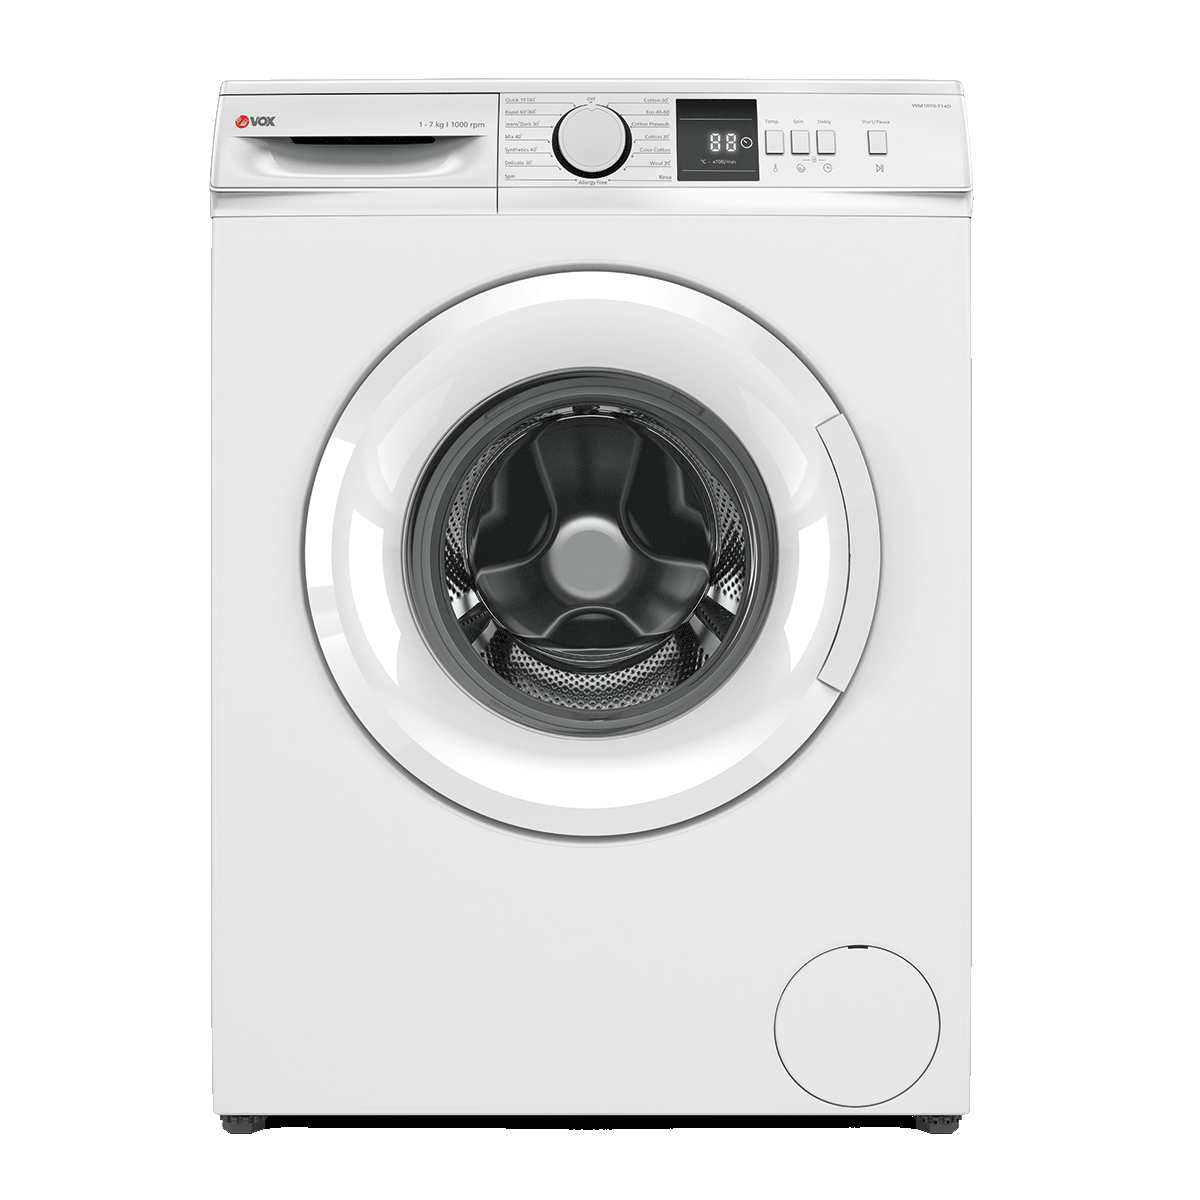 Mašina za pranje veša WM1070-T14D 